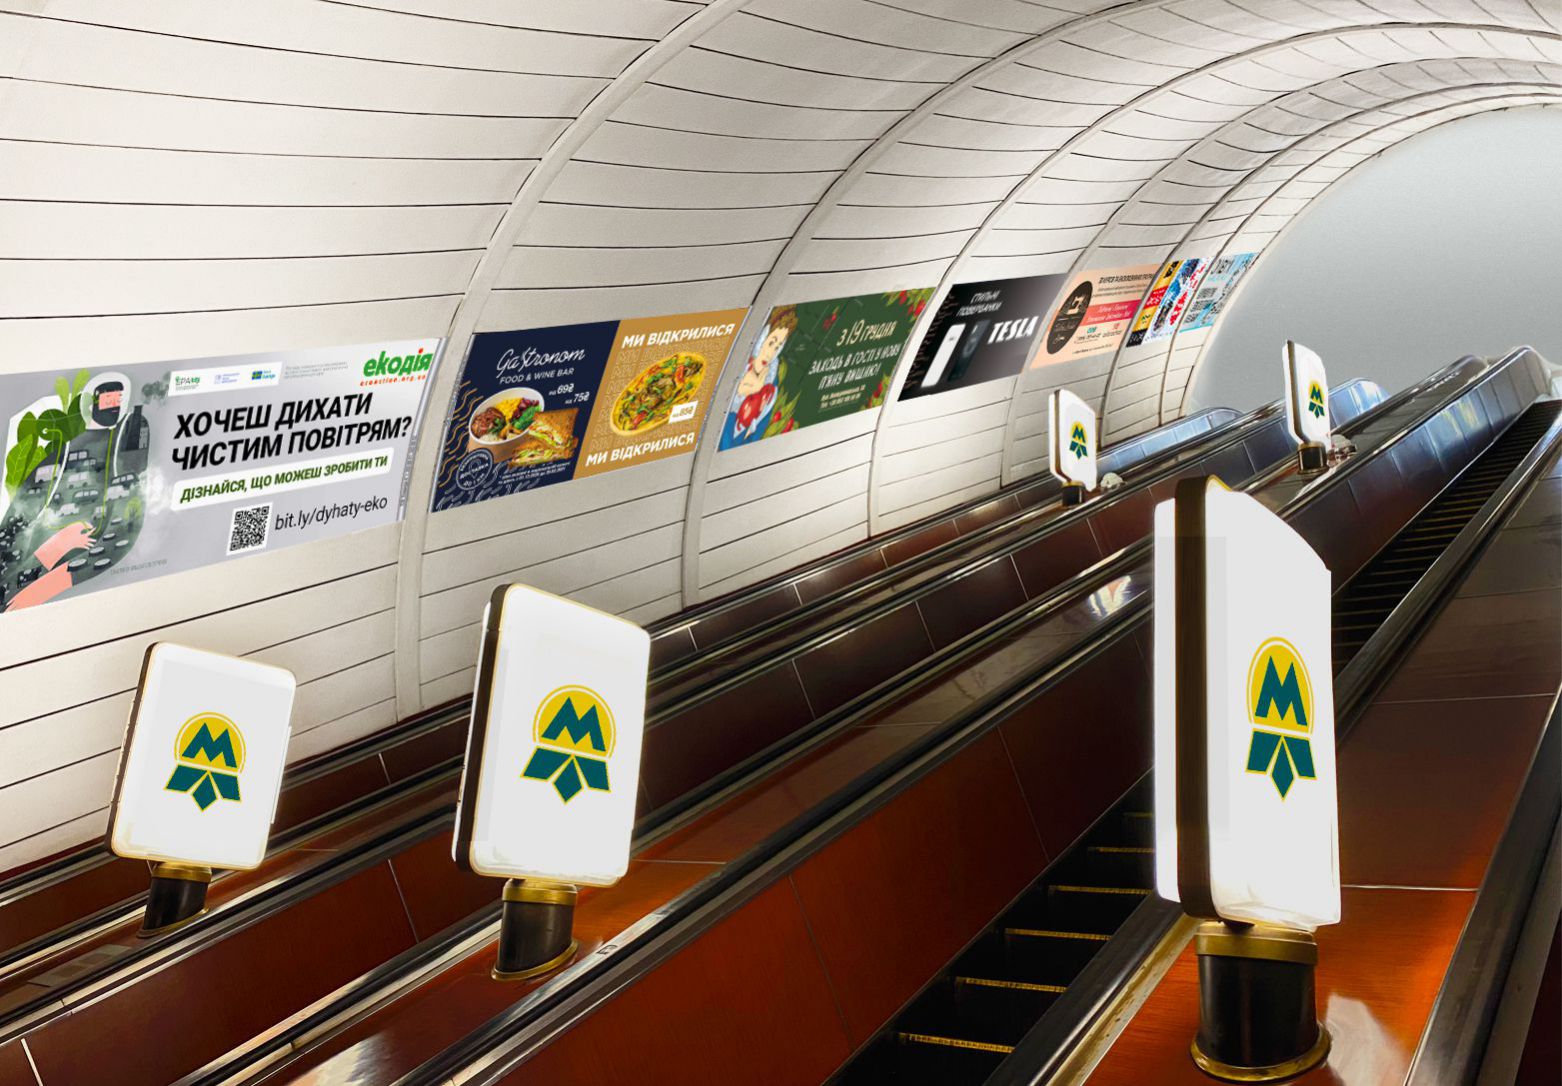 На эскалаторах станций метро Киева два метроборда в обоих направлениях по цене одного!